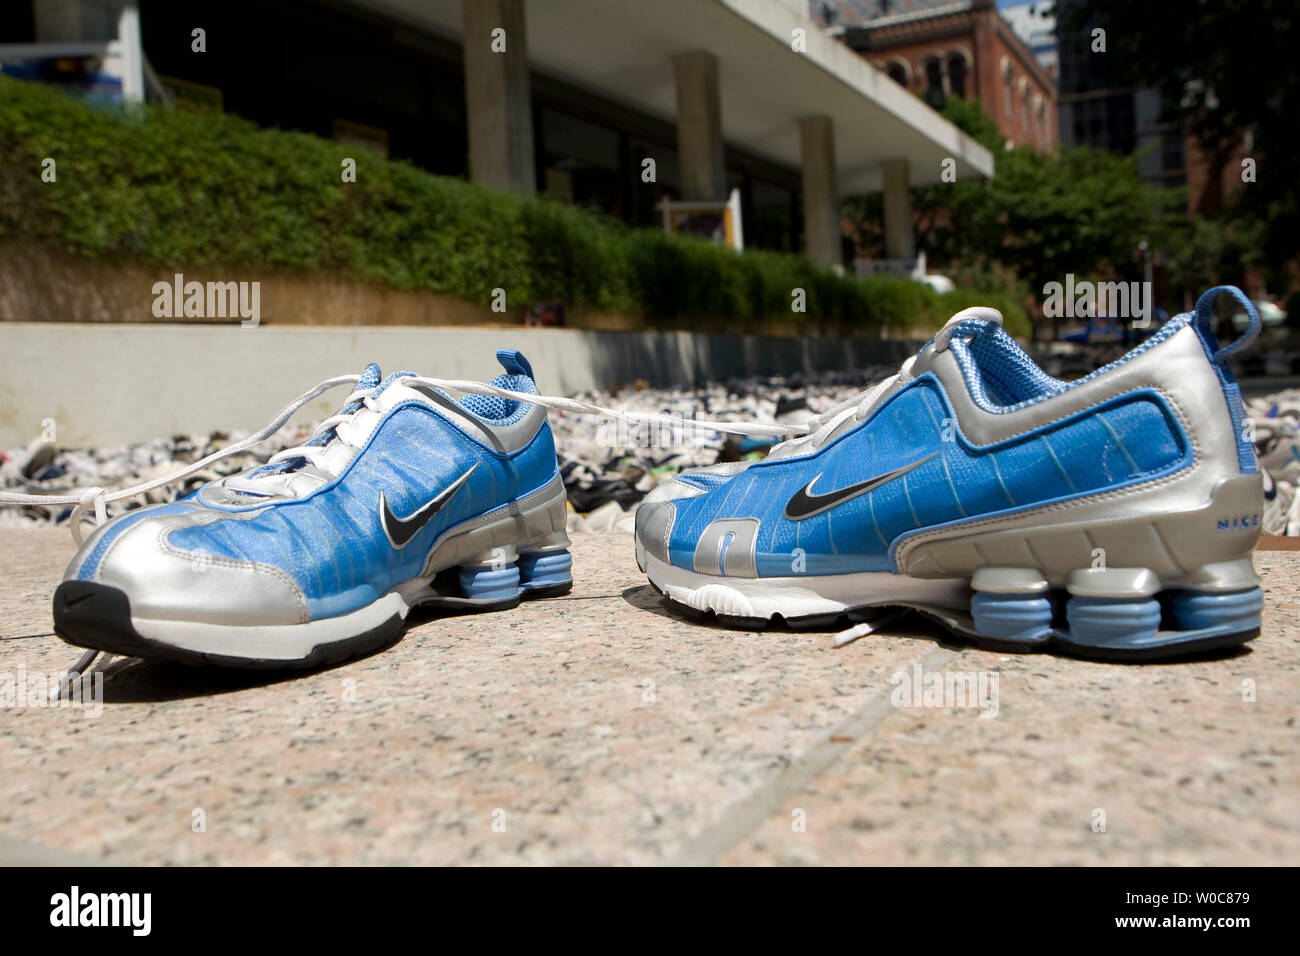 Ein Paar Nike Schuhe gespendet von Schauspielerin Cameron Diaz, Teil der  neu eingestellten Guinness World Record für die längste Kette der Schuhe,  10512, sind hier während einer Veranstaltung von National Geographic Kids